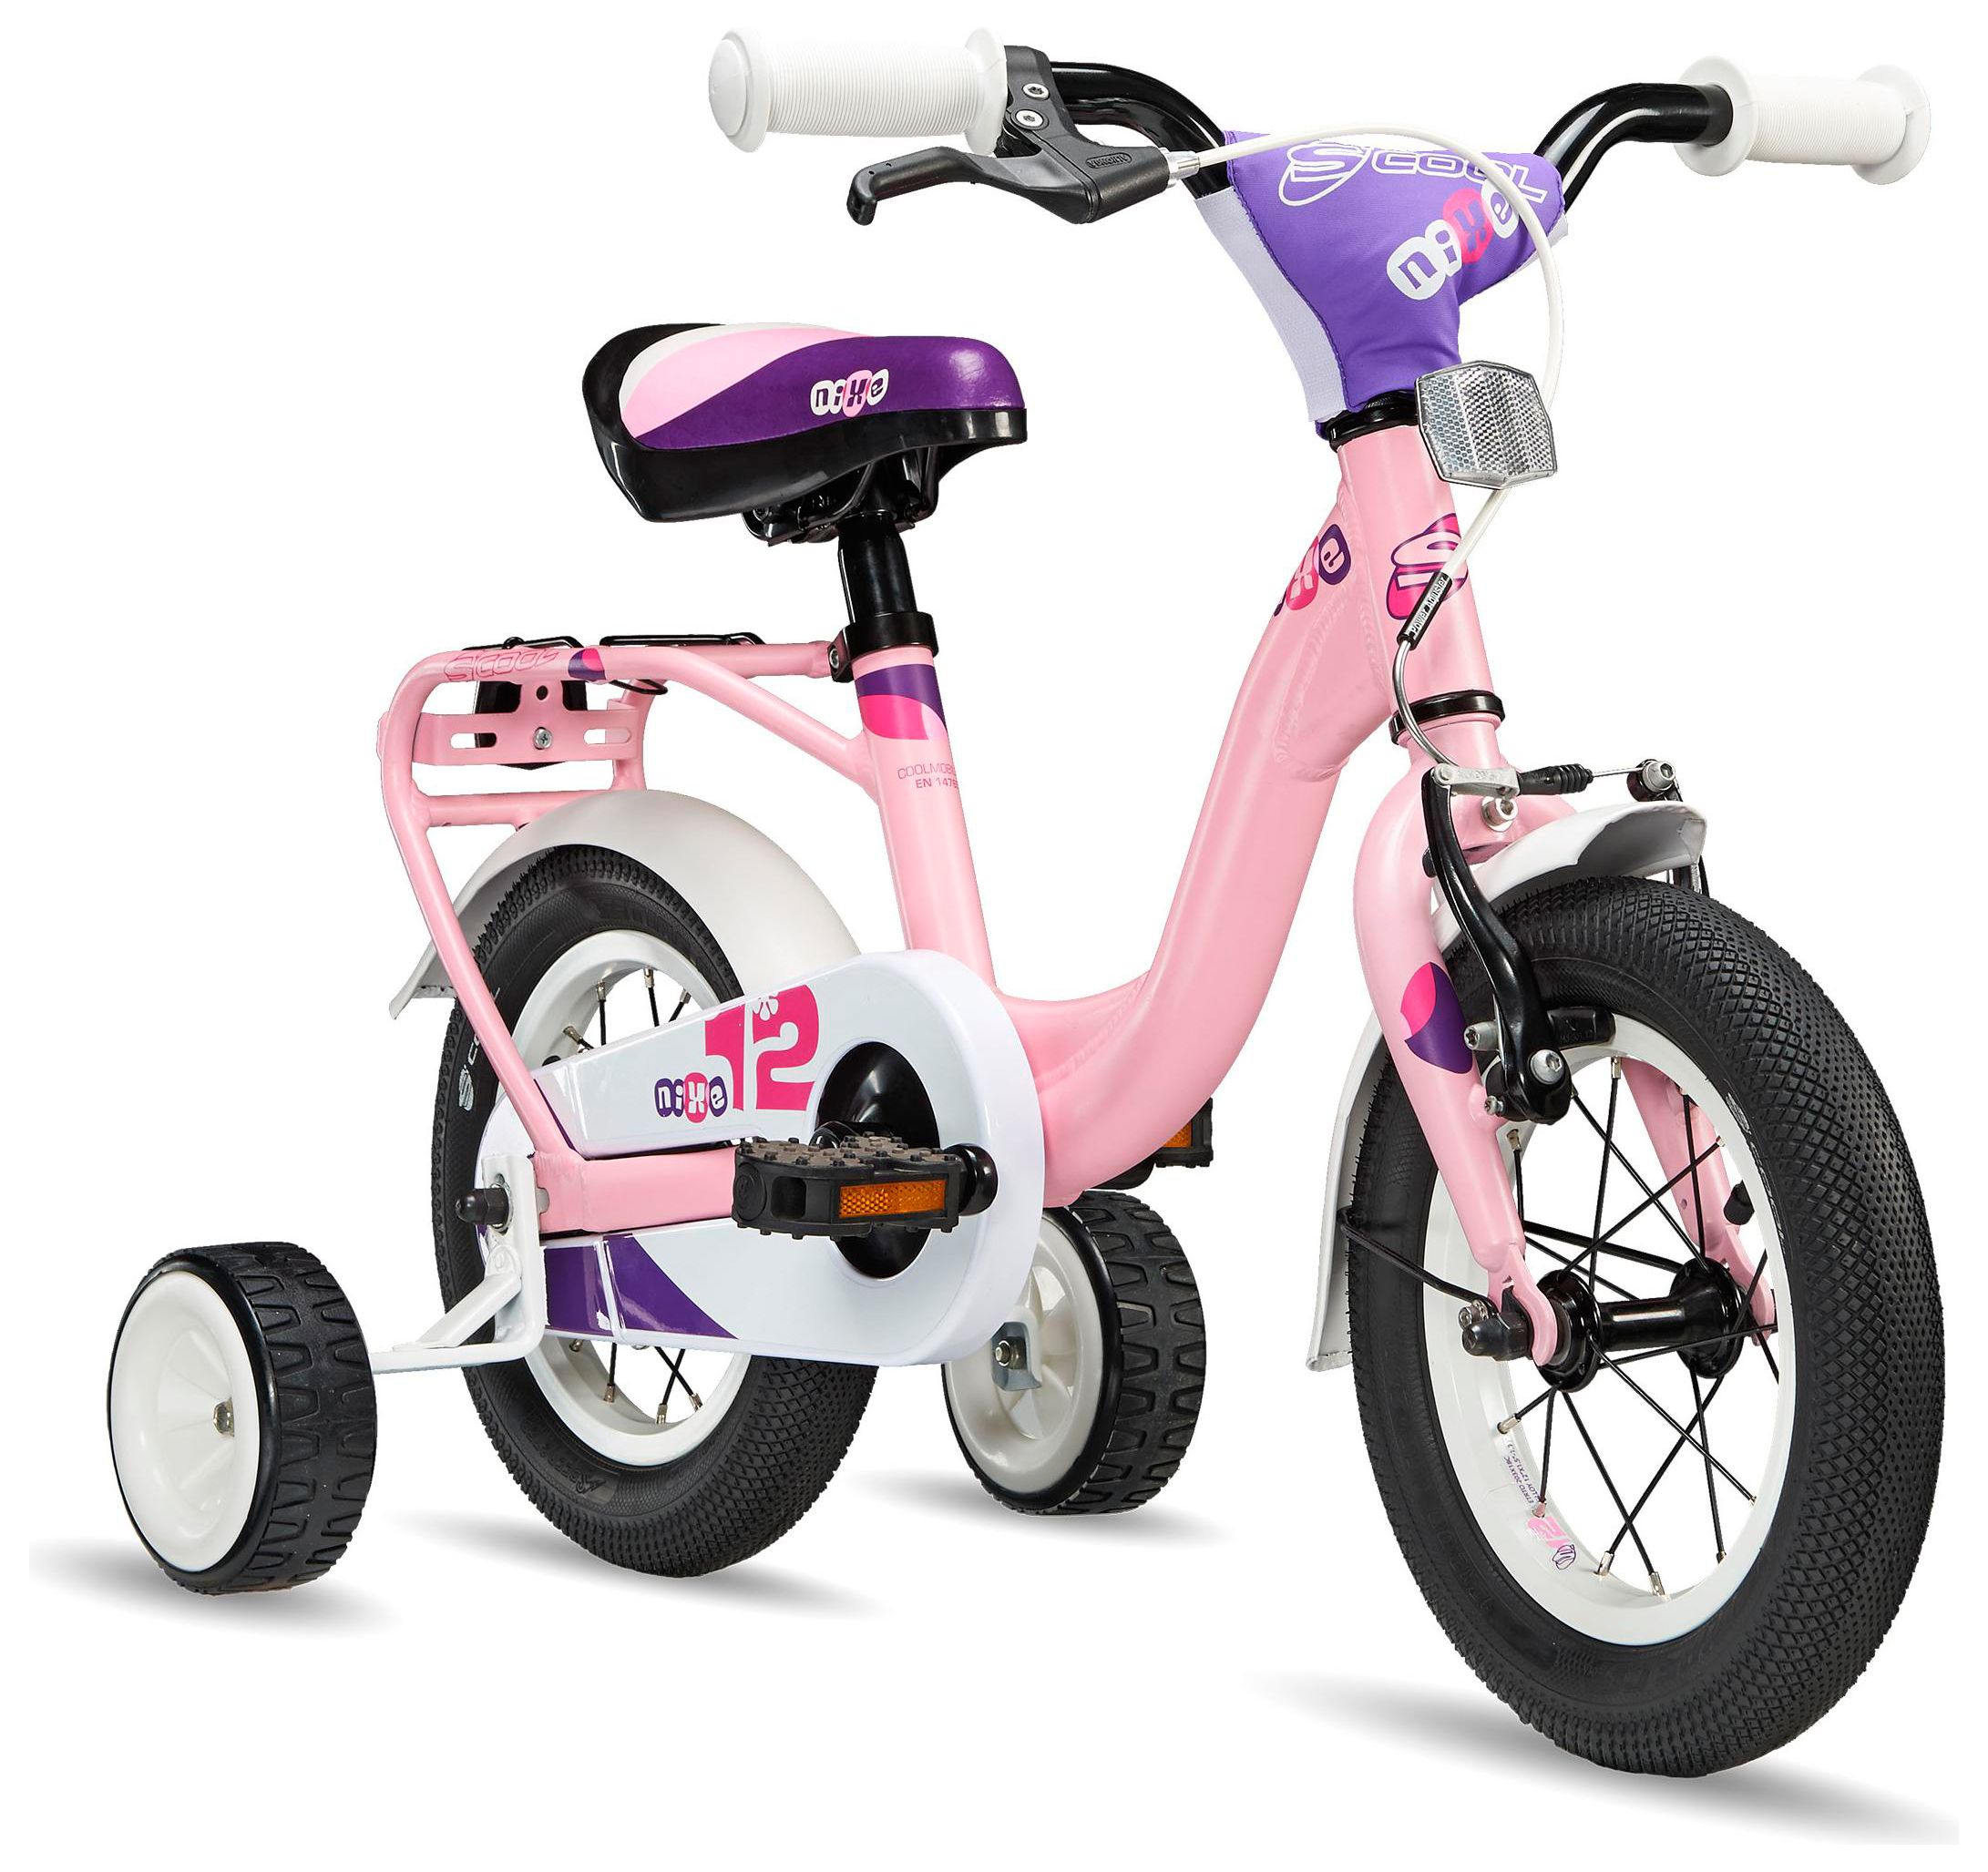  Отзывы о Детском велосипеде Scool niXe 12 2015